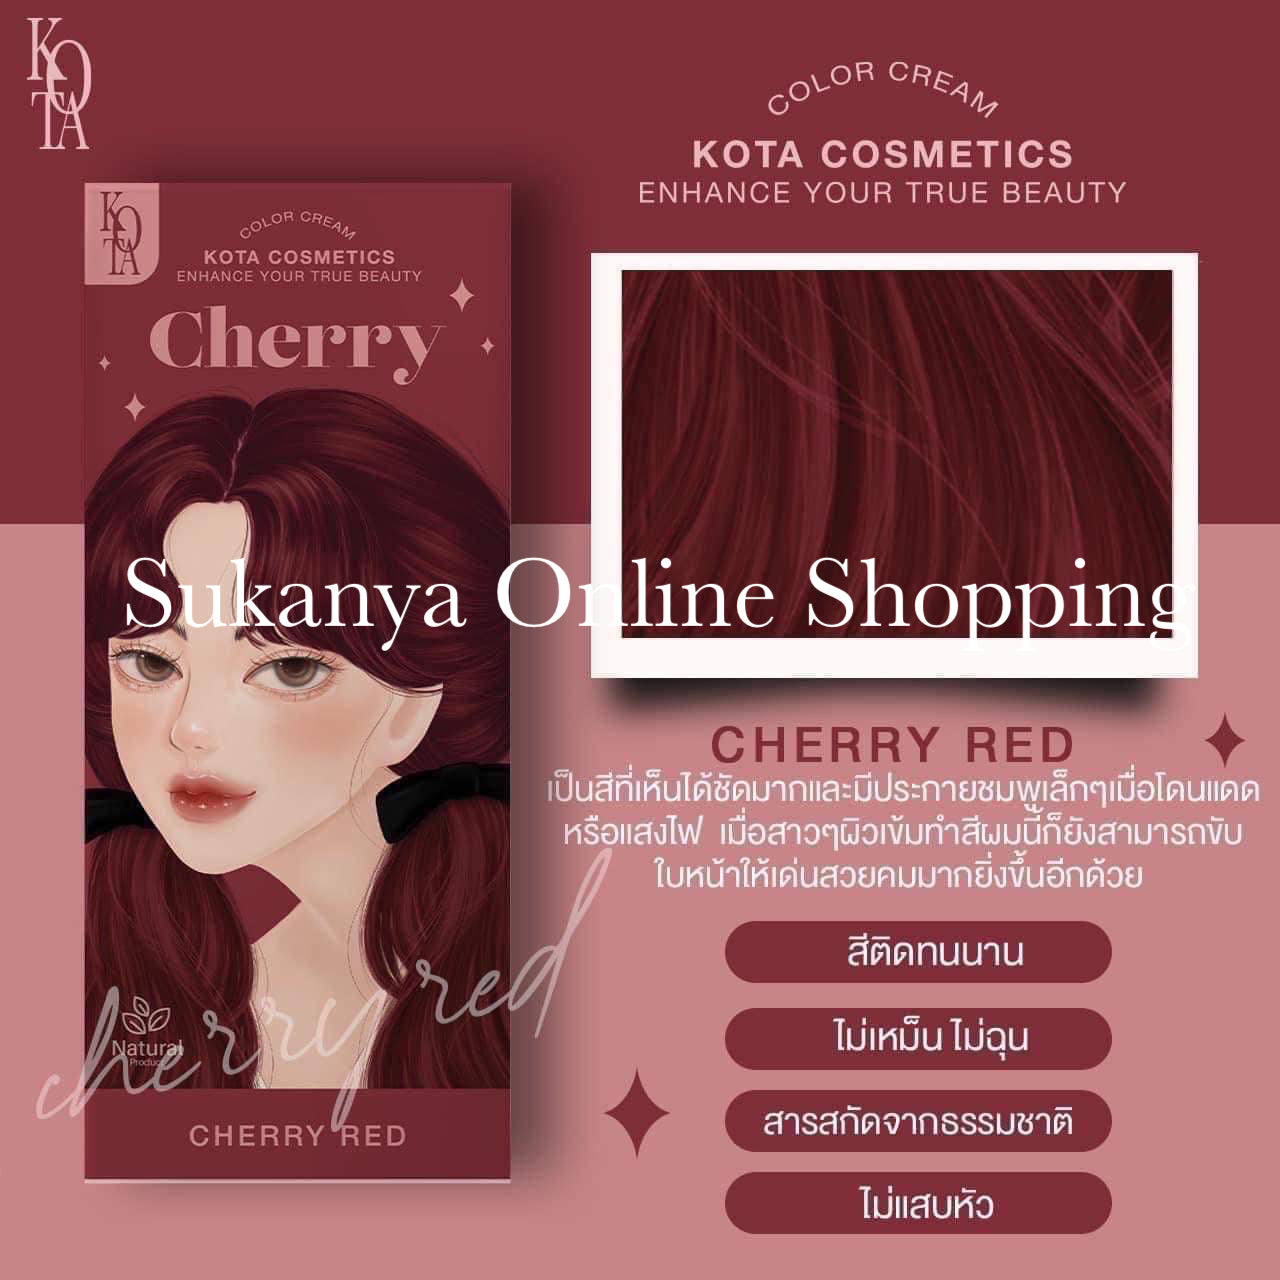 ยาย้อมผม -โคทา คอสเมติด คัลเลอร์ ครีม เชอร์รี่ (เชอร์รี่ เรด)-Kota Cosmetics Color Cream Cherry(Cherry Red)